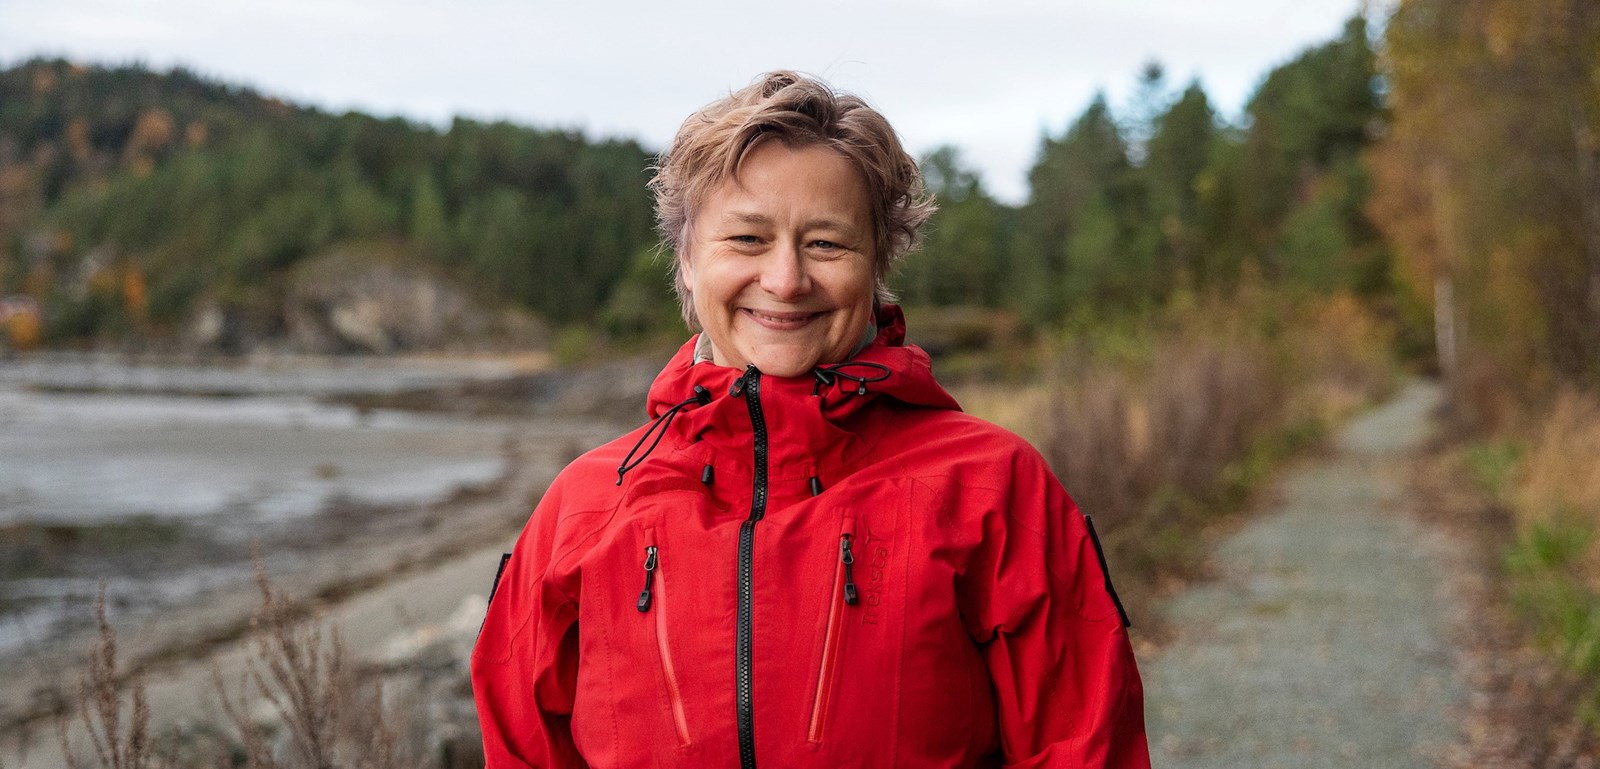 Portrettbilde av en smilende kvinne i rød jakke langs en skogsti